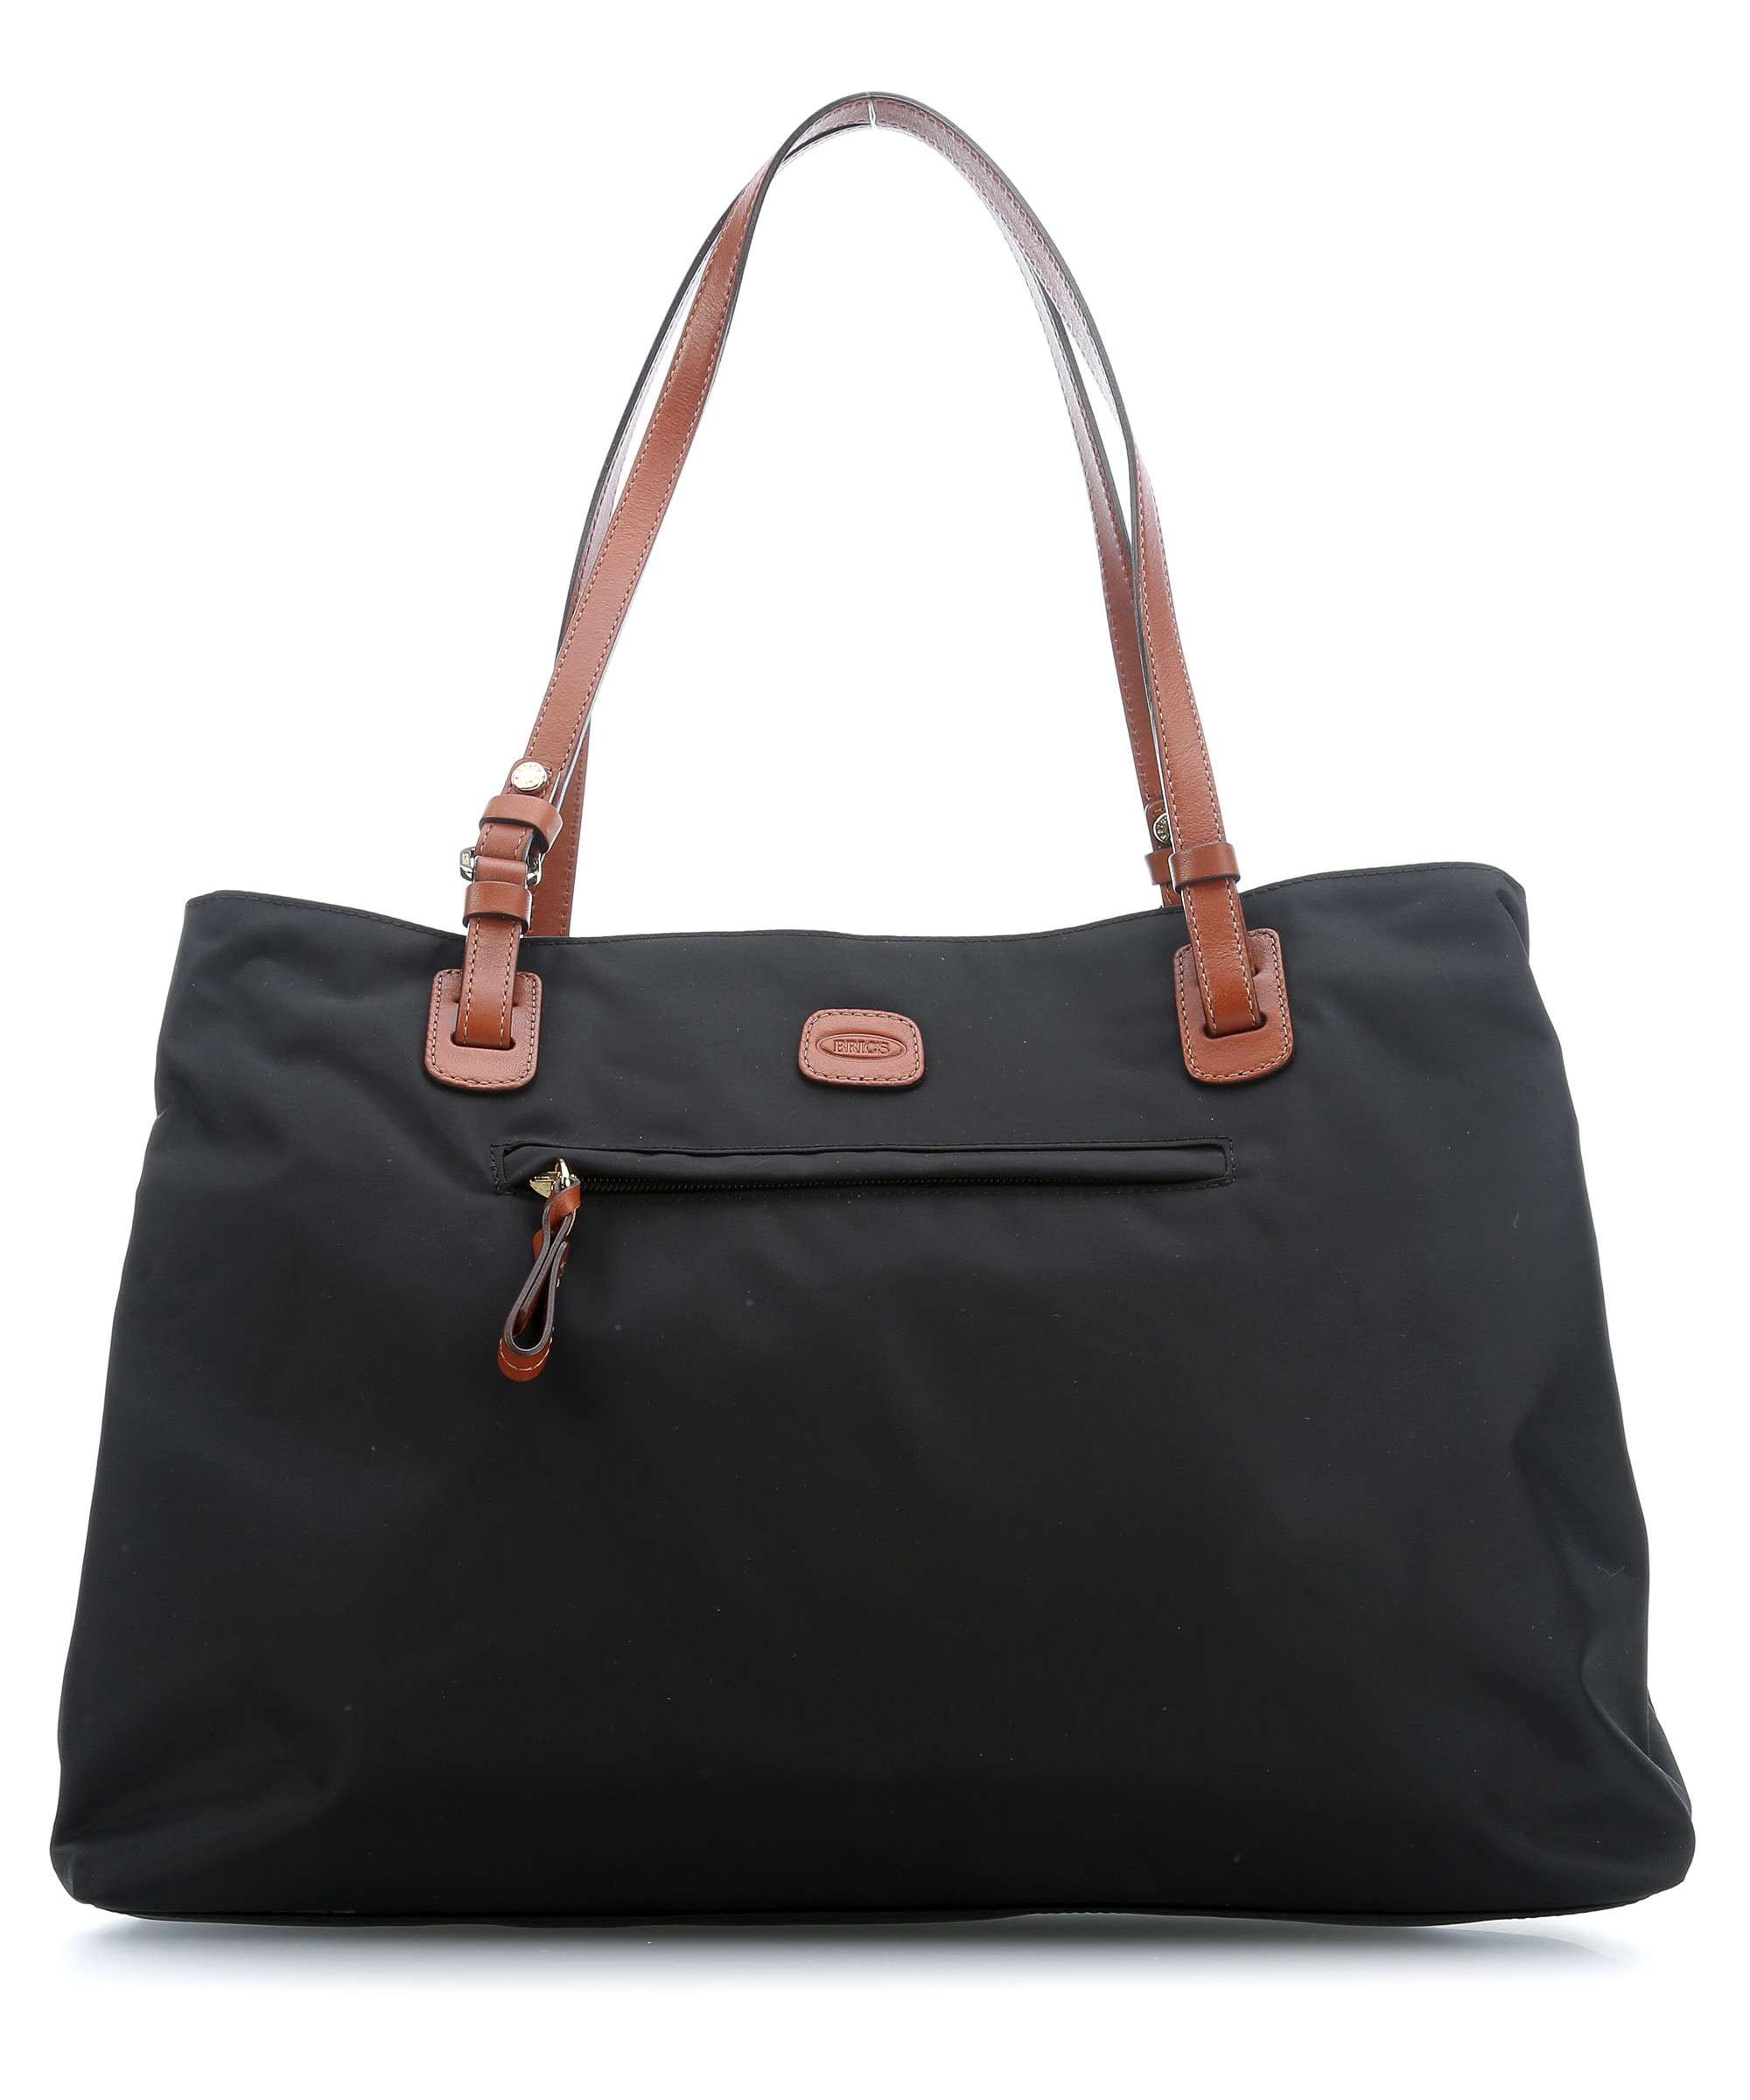 Жіноча текстильна повсякденна сумка Bric's X-Bag BXG45281.101 чорна